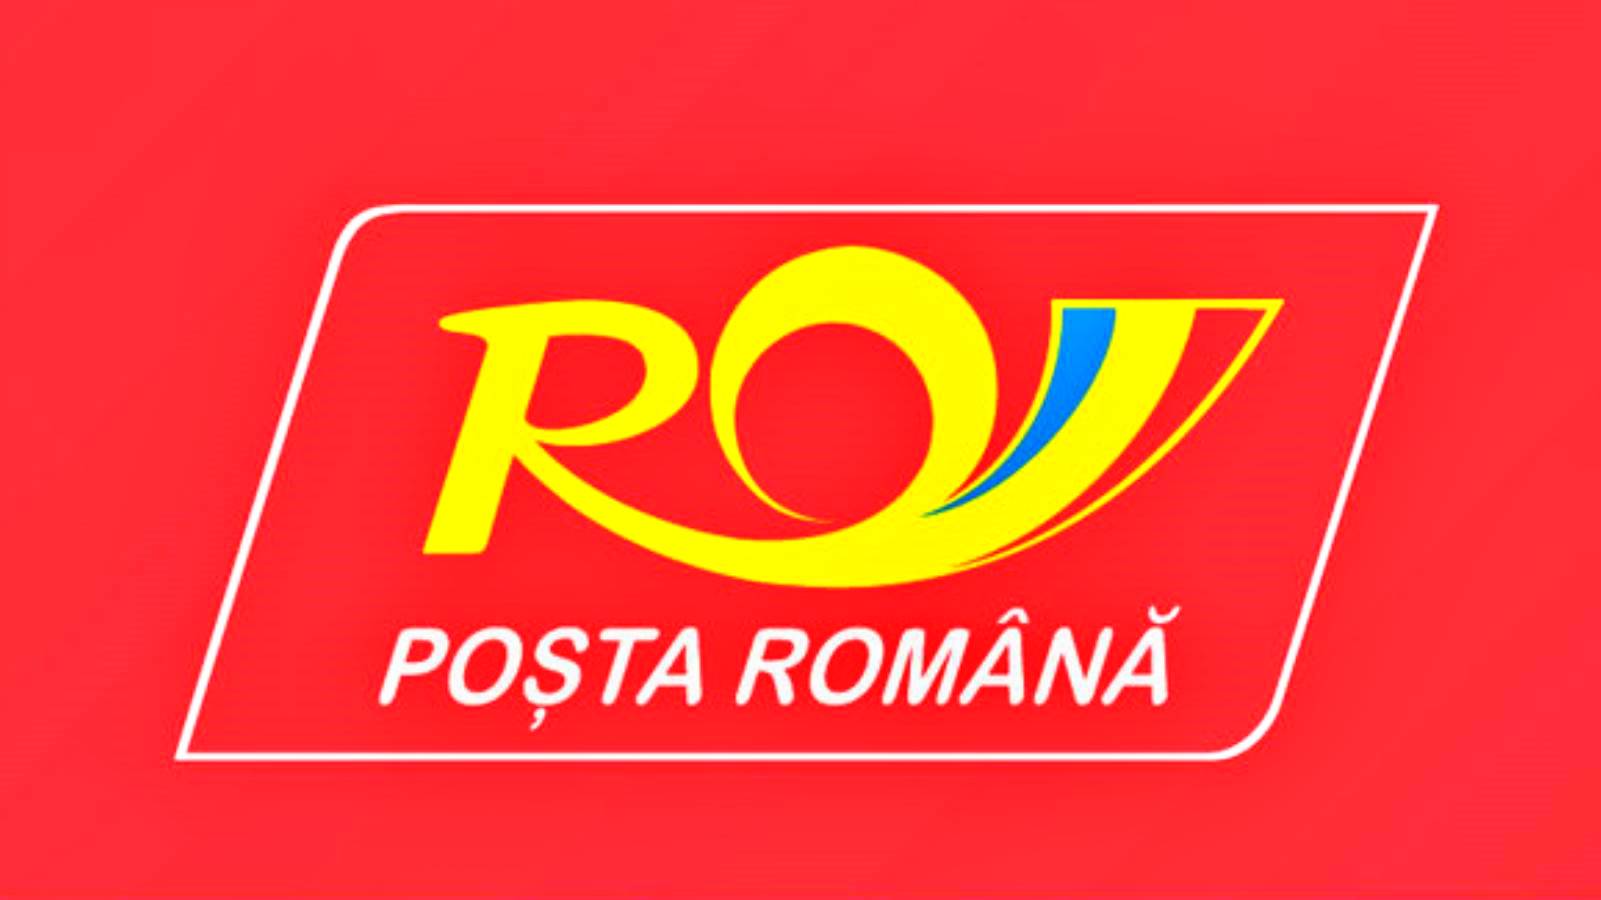 Romanian Postin ilmoitus, joka koskee koko Romaniaa